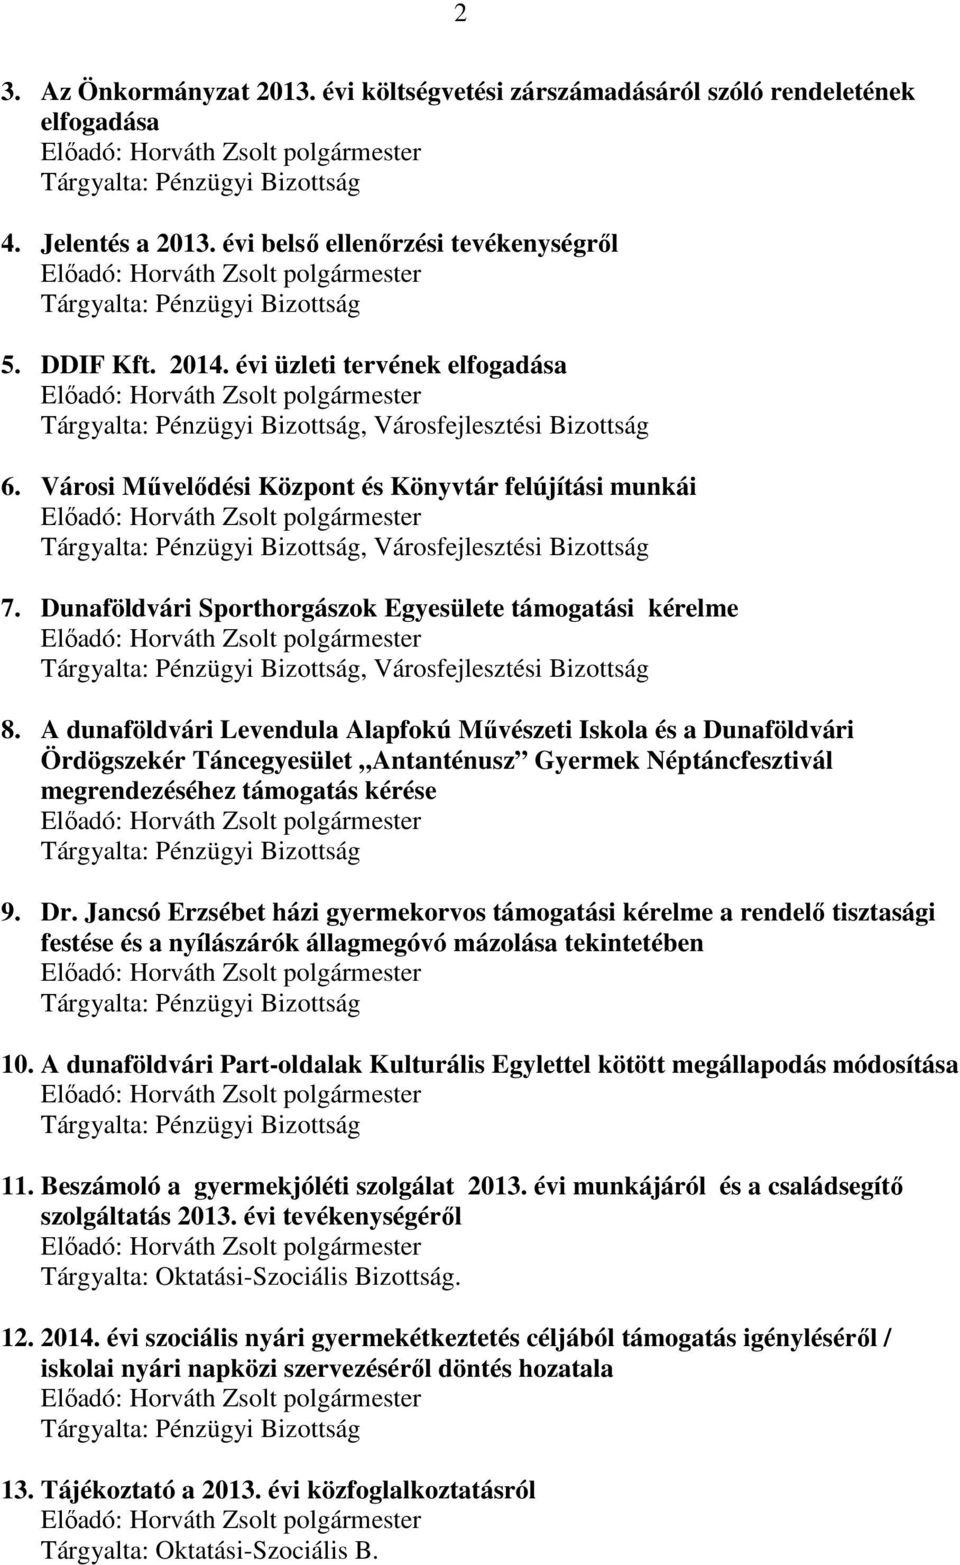 Dunaföldvári Sporthorgászok Egyesülete támogatási kérelme, Városfejlesztési Bizottság 8.